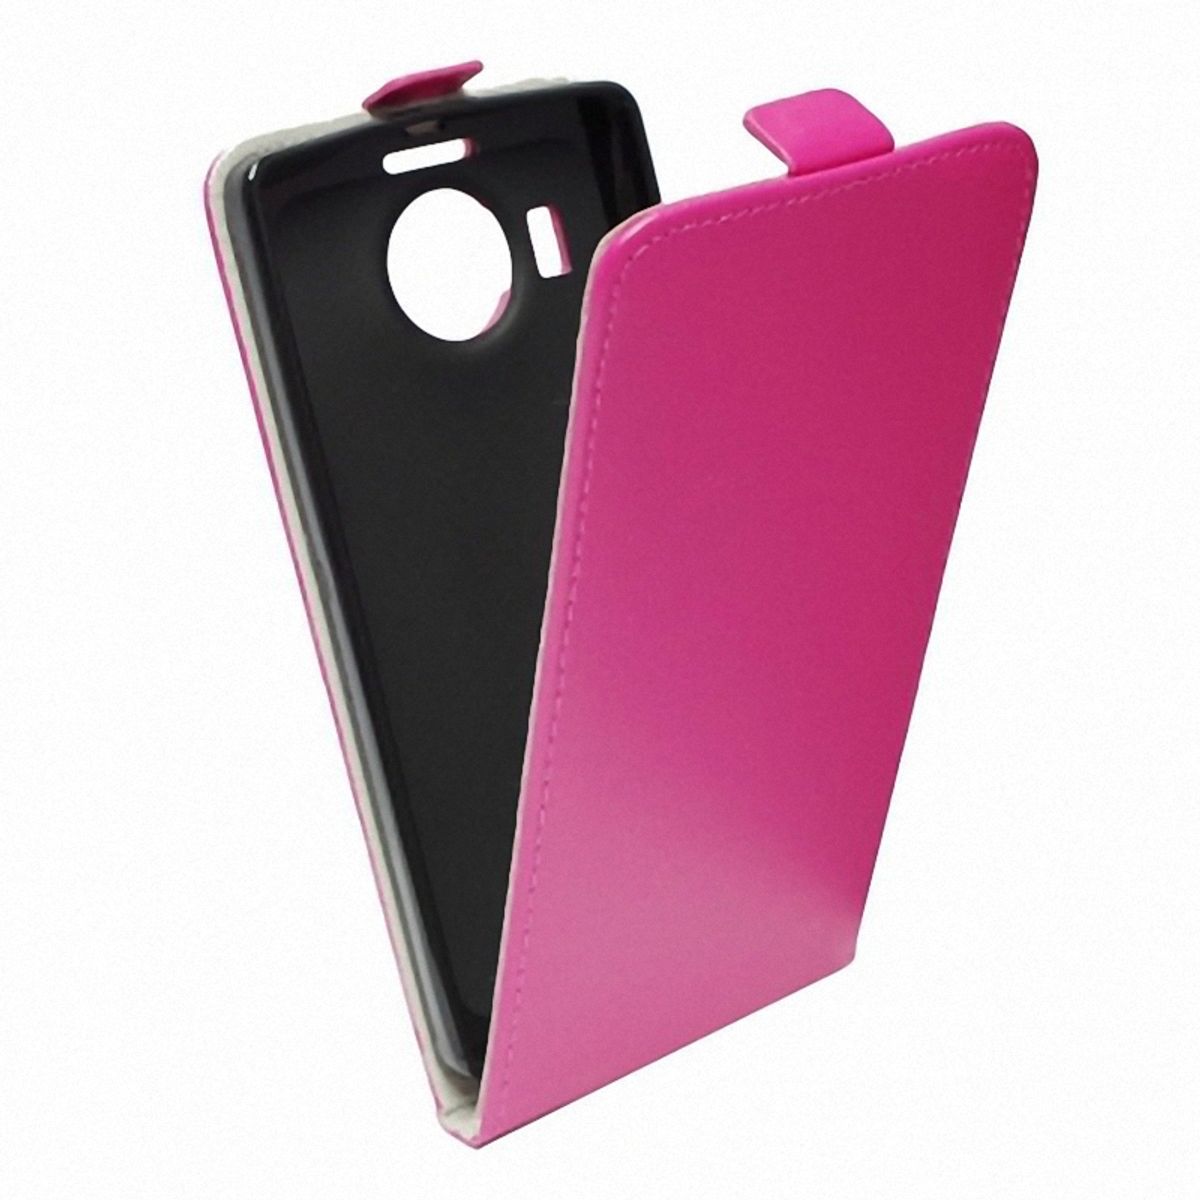 König Design flip protective case Huawei Mate S pink imitation leather slim flex shell bumper